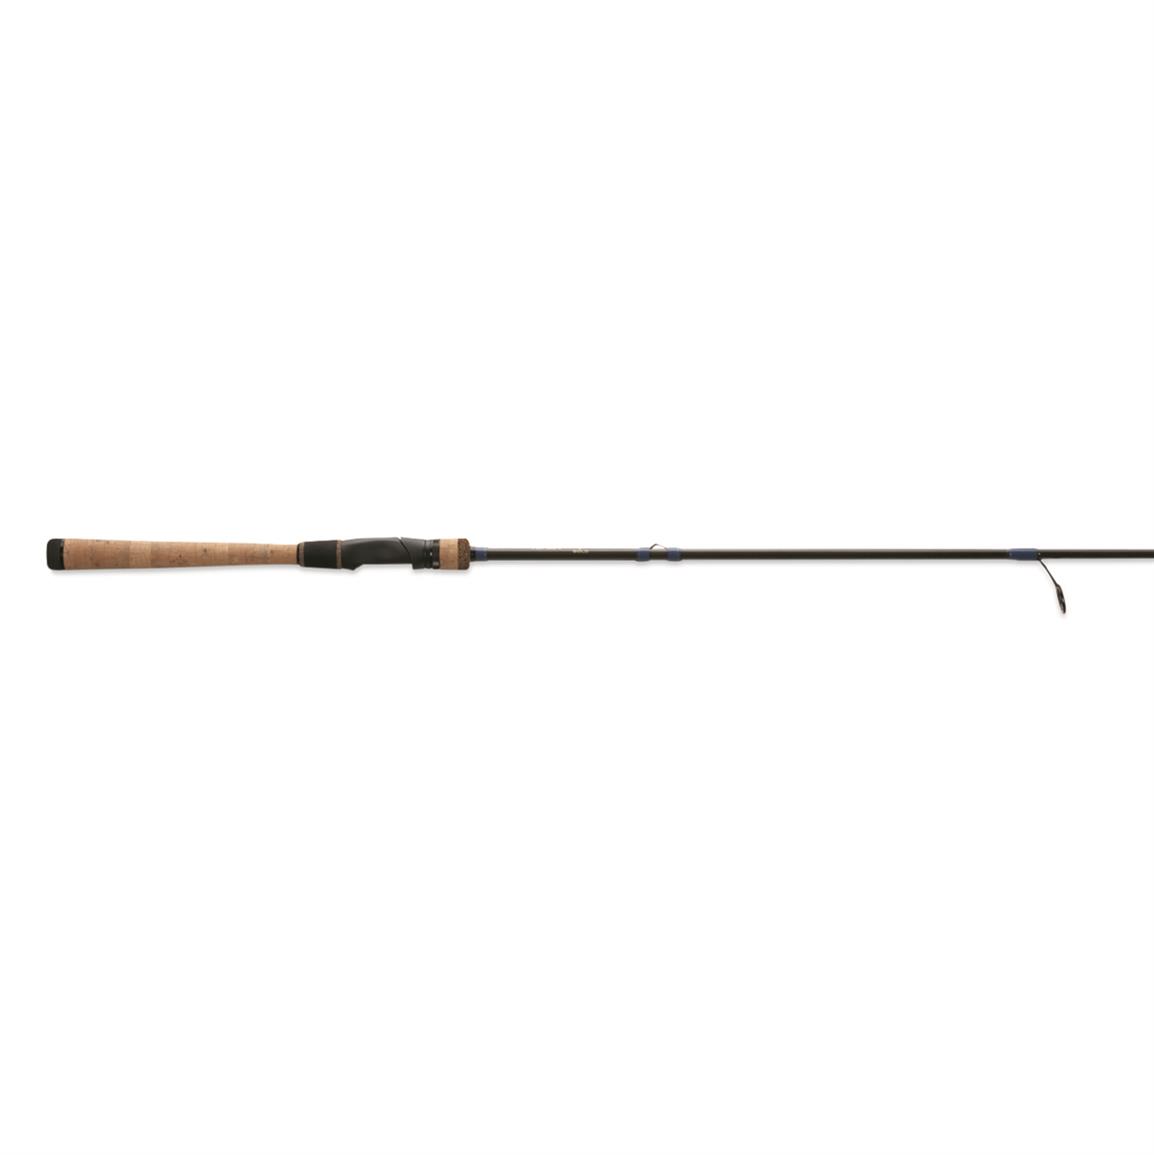 13 Fishing Defy Gold Spinning Rod, 6'9 Length, Medium, Fast